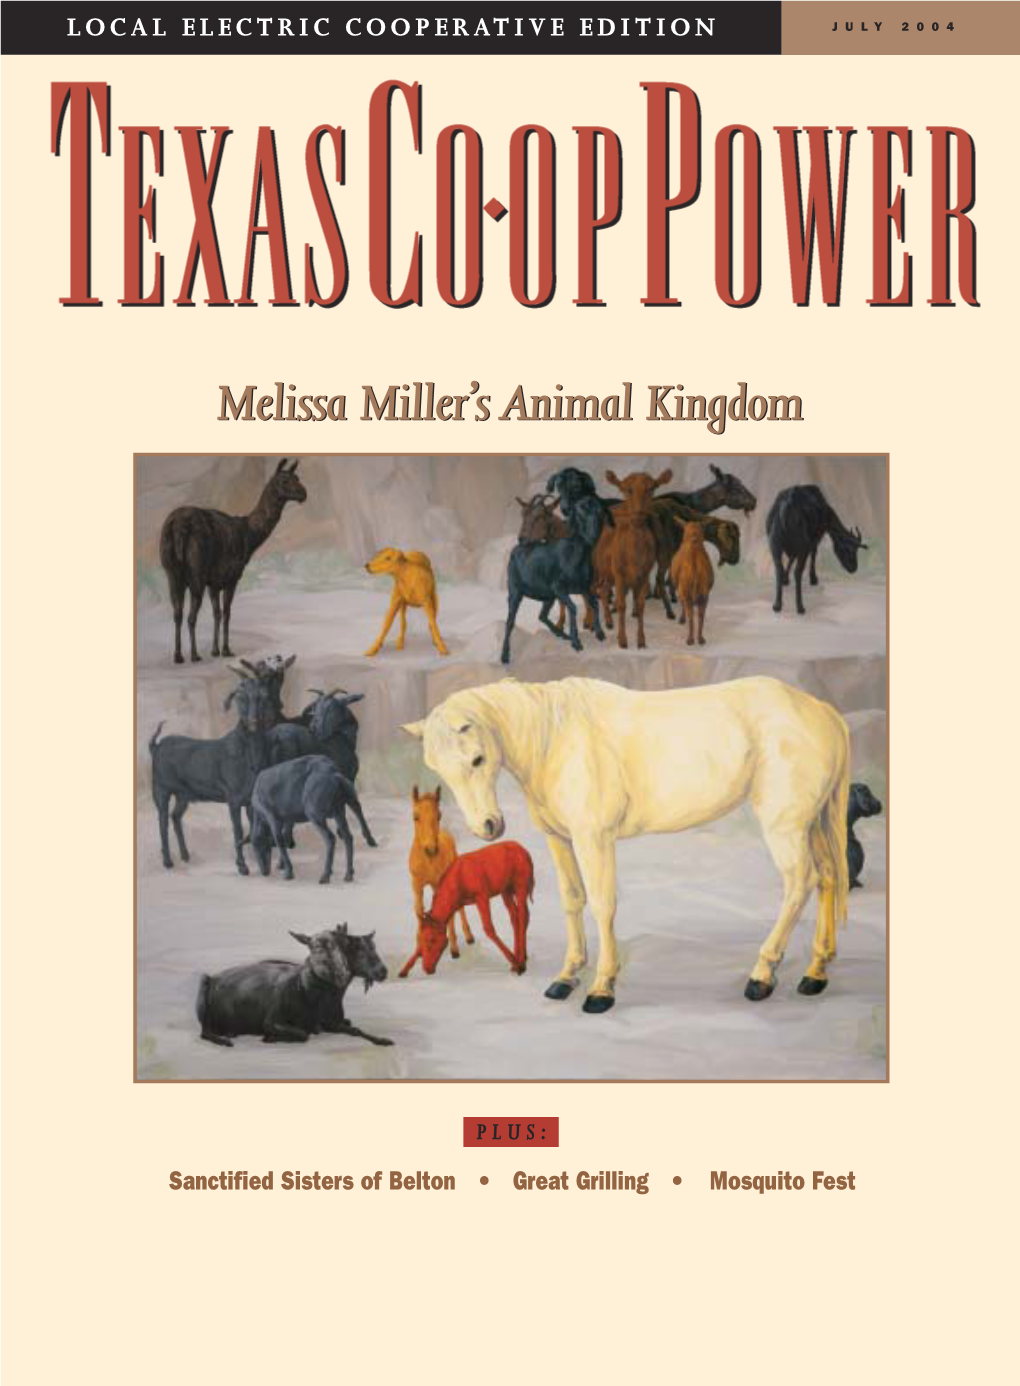 Melissa Miller's Animal Kingdom